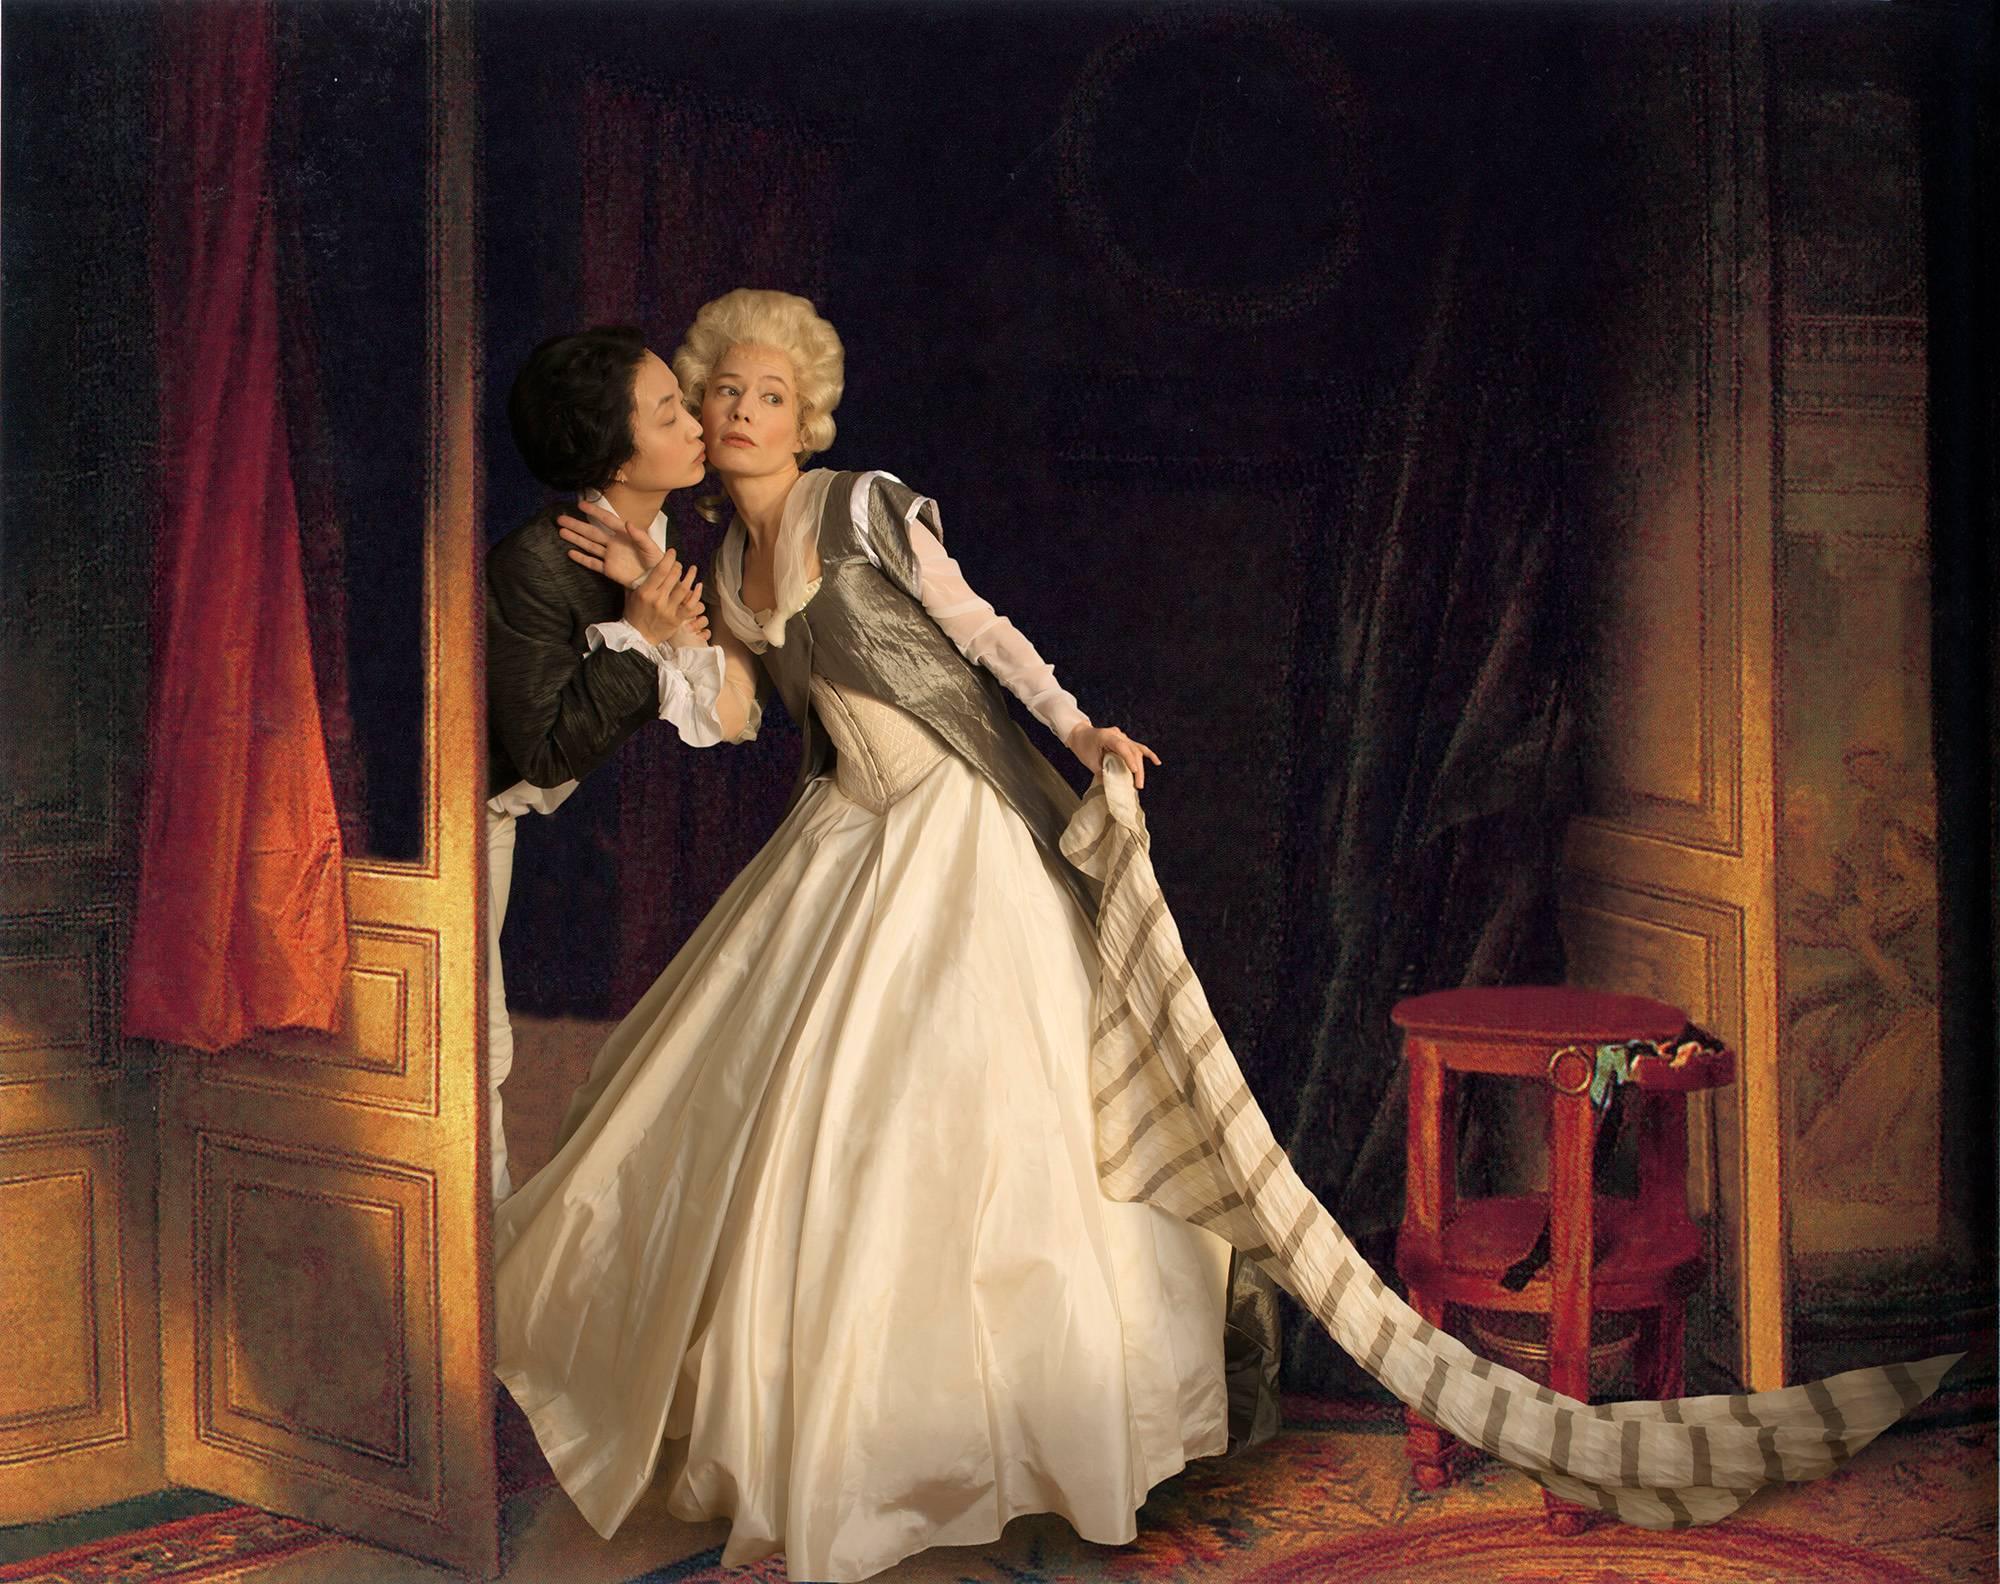 E2 - Kleinveld & Julien Figurative Photograph - Ode to Fragonard's The Stolen Kiss